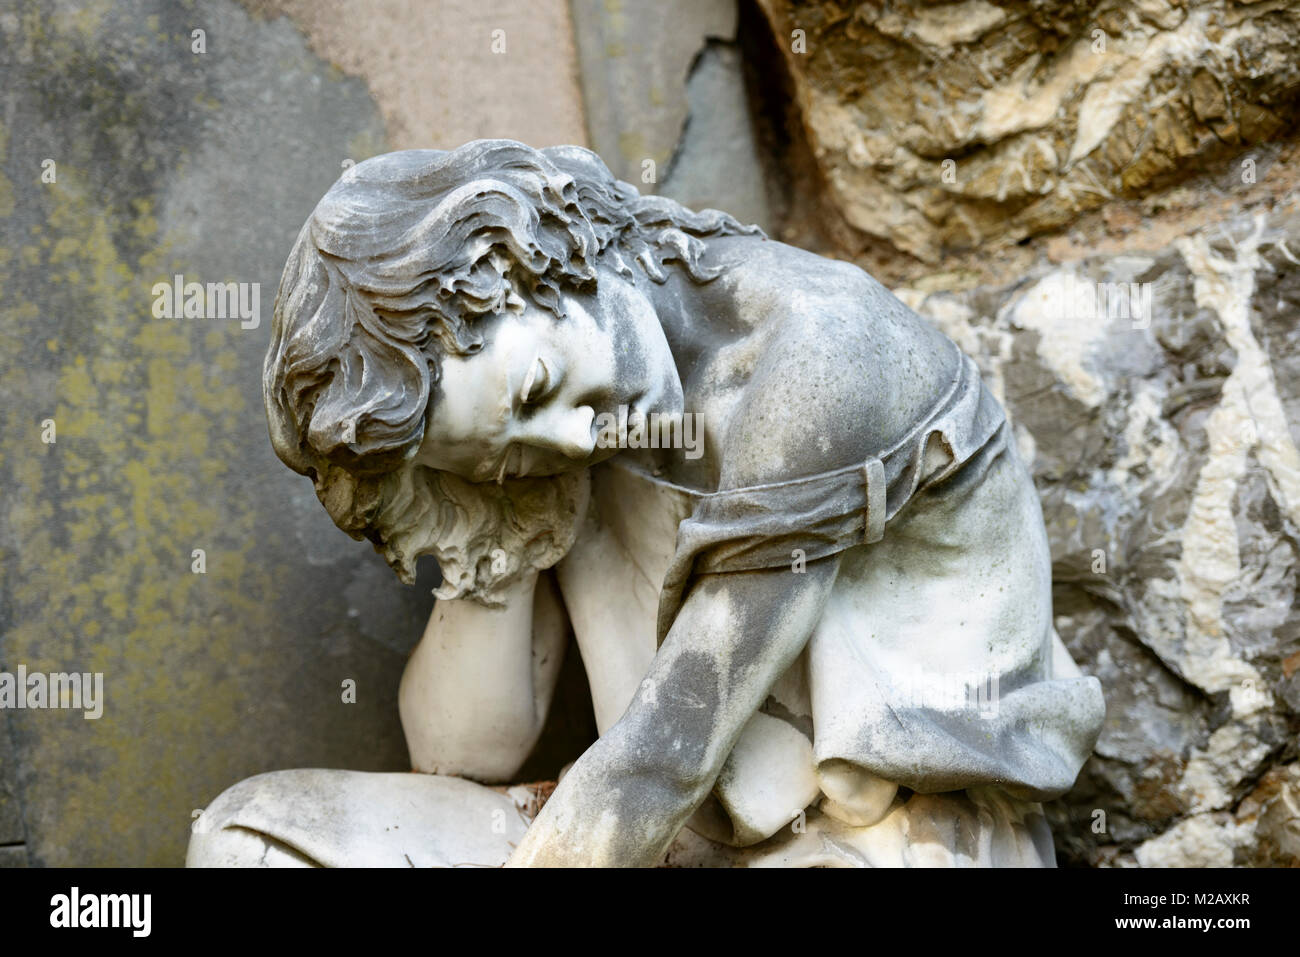 La scultura in pietra della donna che soffre a storico monumentale cimitero di Staglieno in città, girato in condizioni di intensa luce invernale in Genova, liguria, Italy Foto Stock